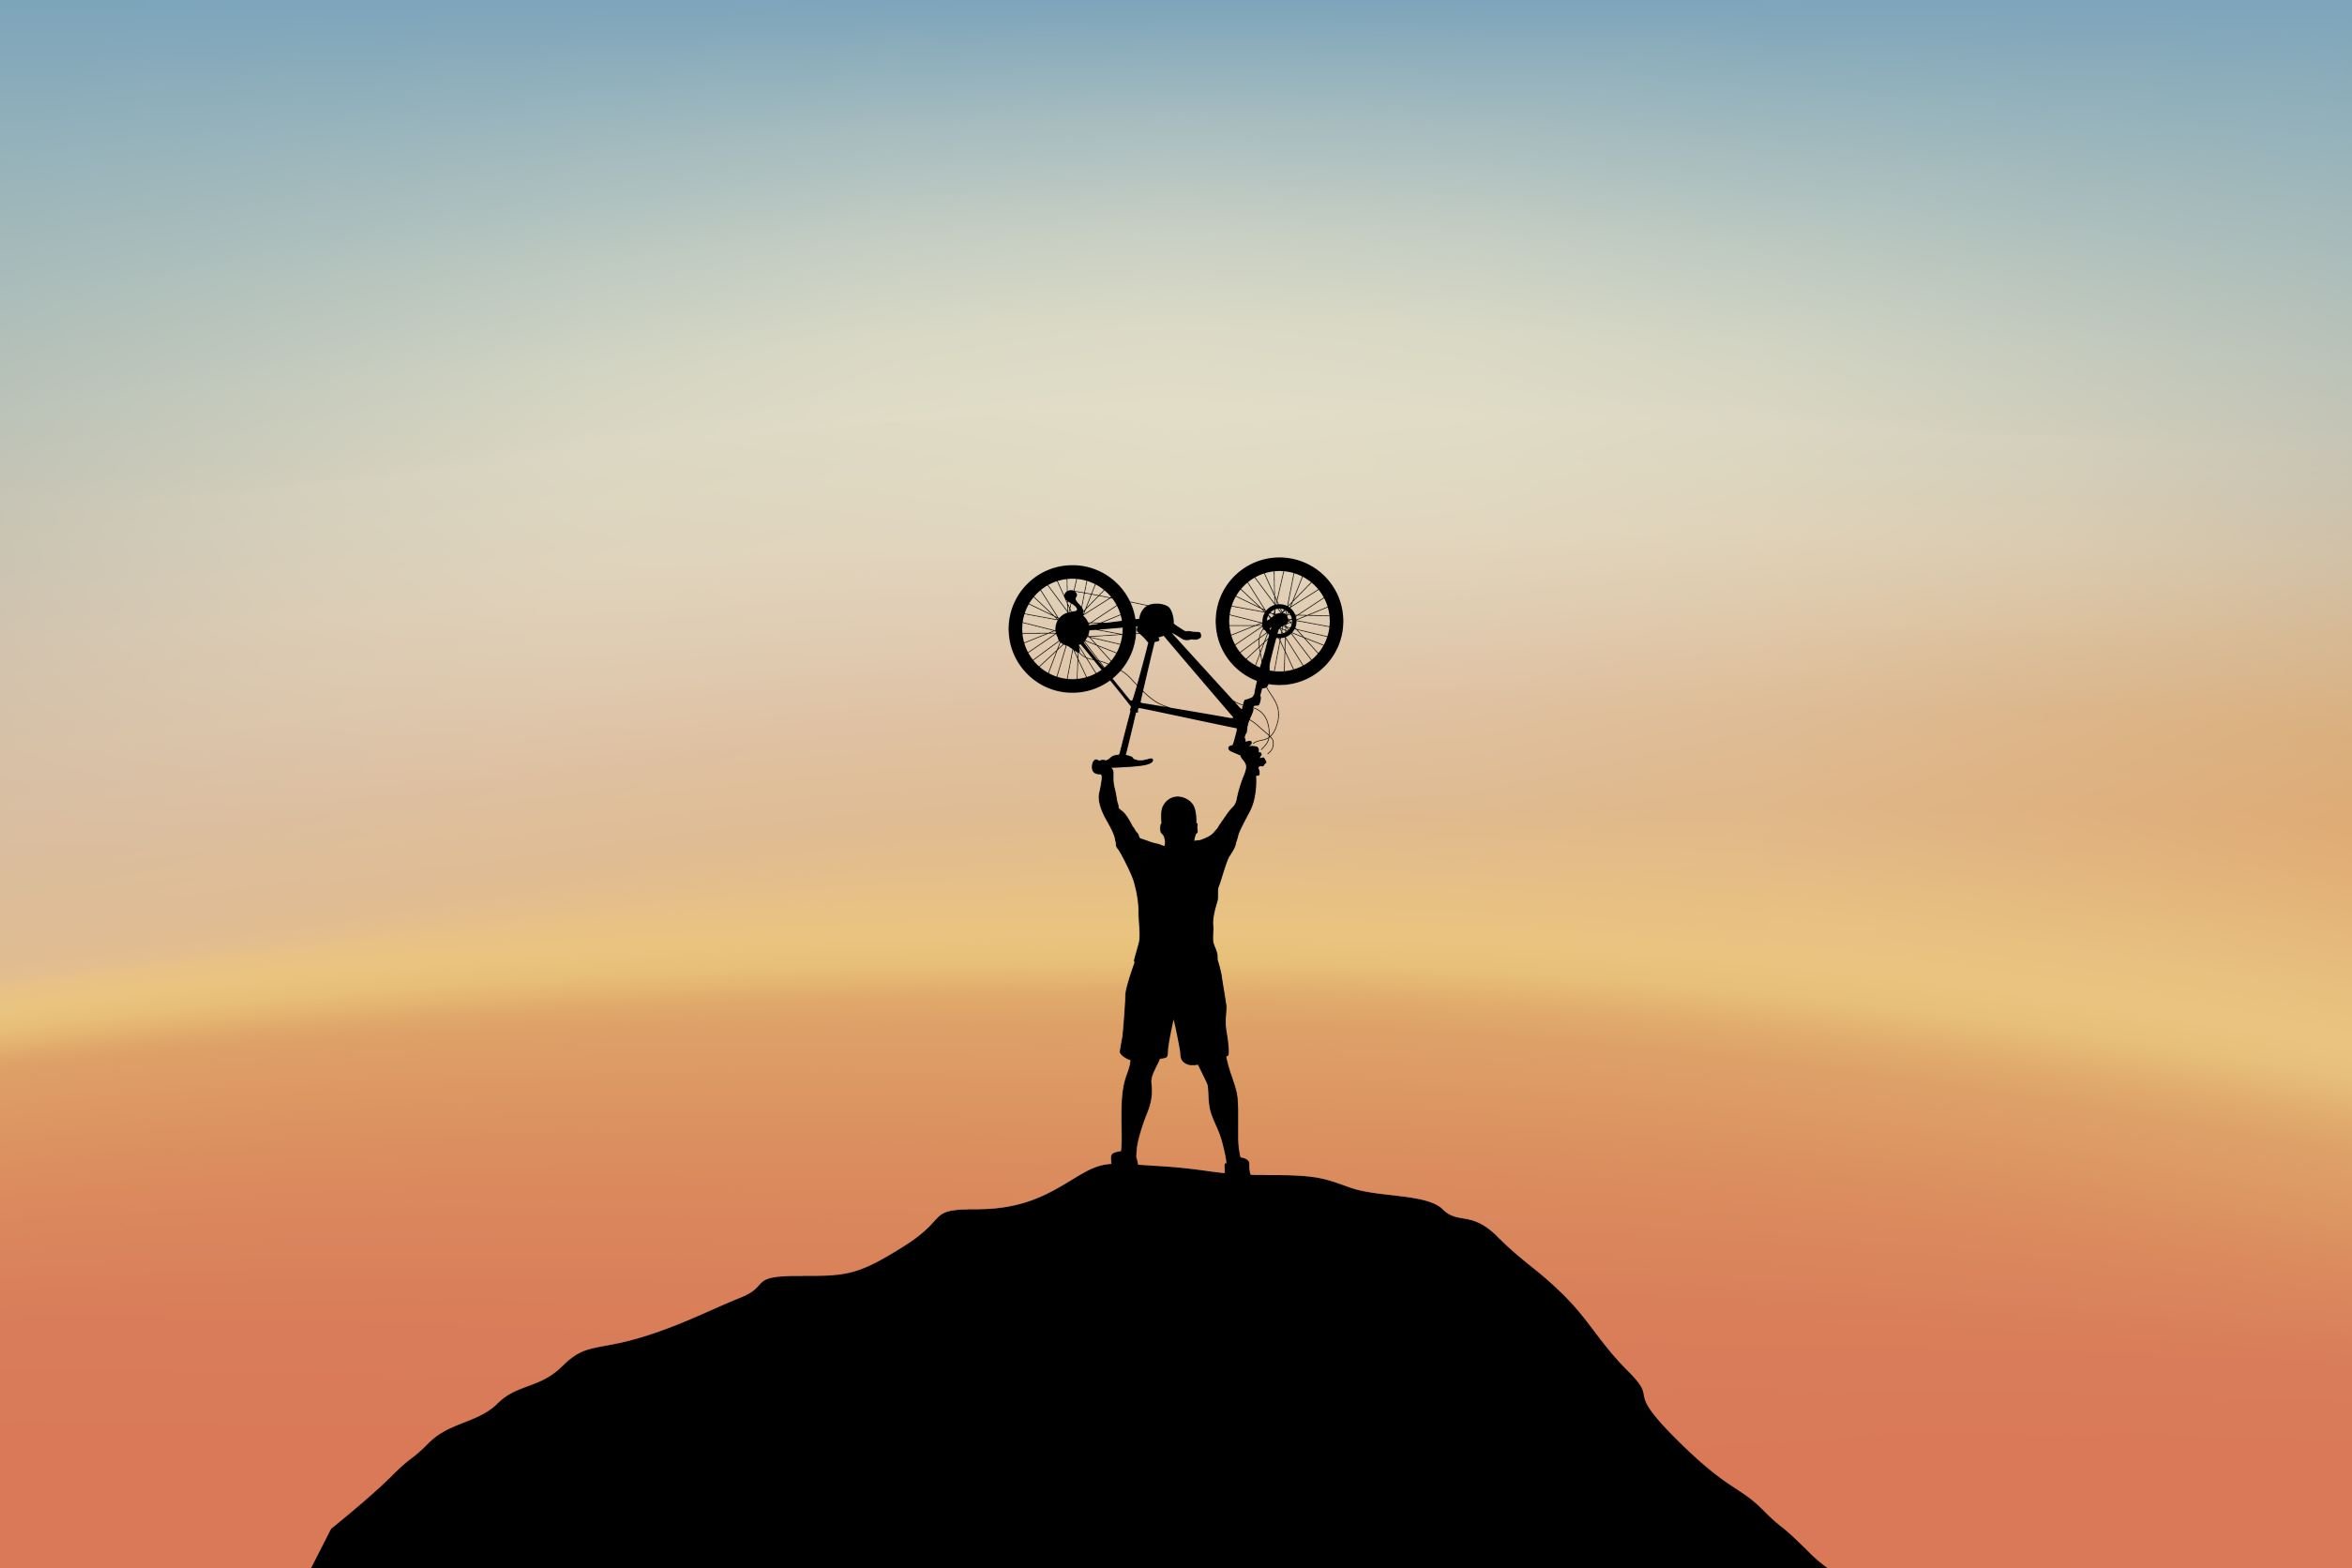 Muškarac čini pobjedničku gestu, držeći brdski bicikl iznad glave na vrhu brda